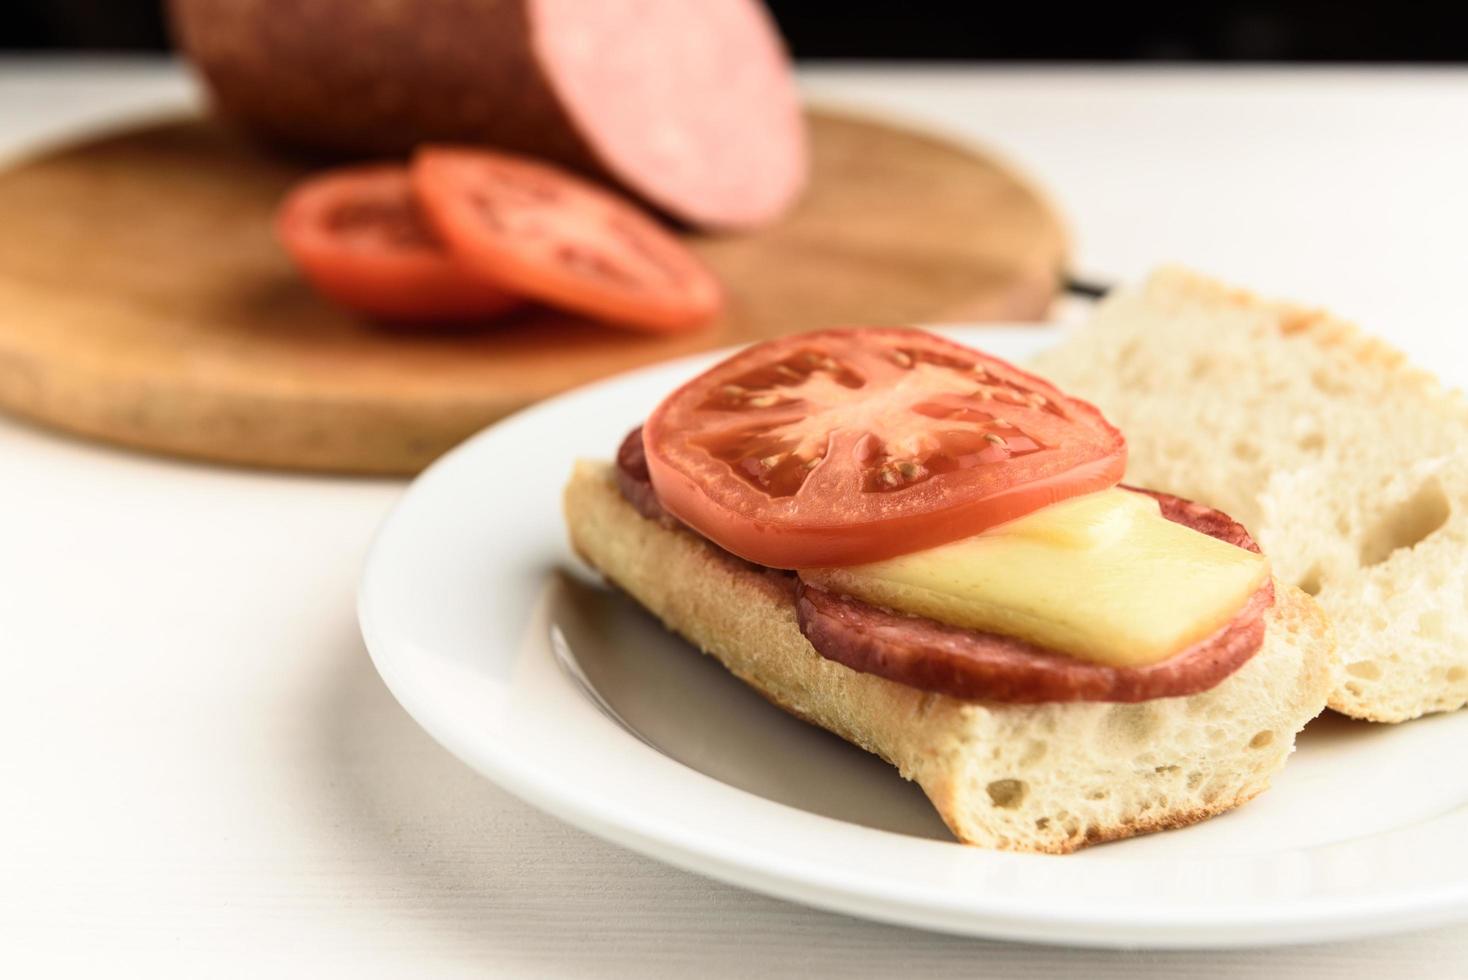 sandwichs chauds aux tomates photo